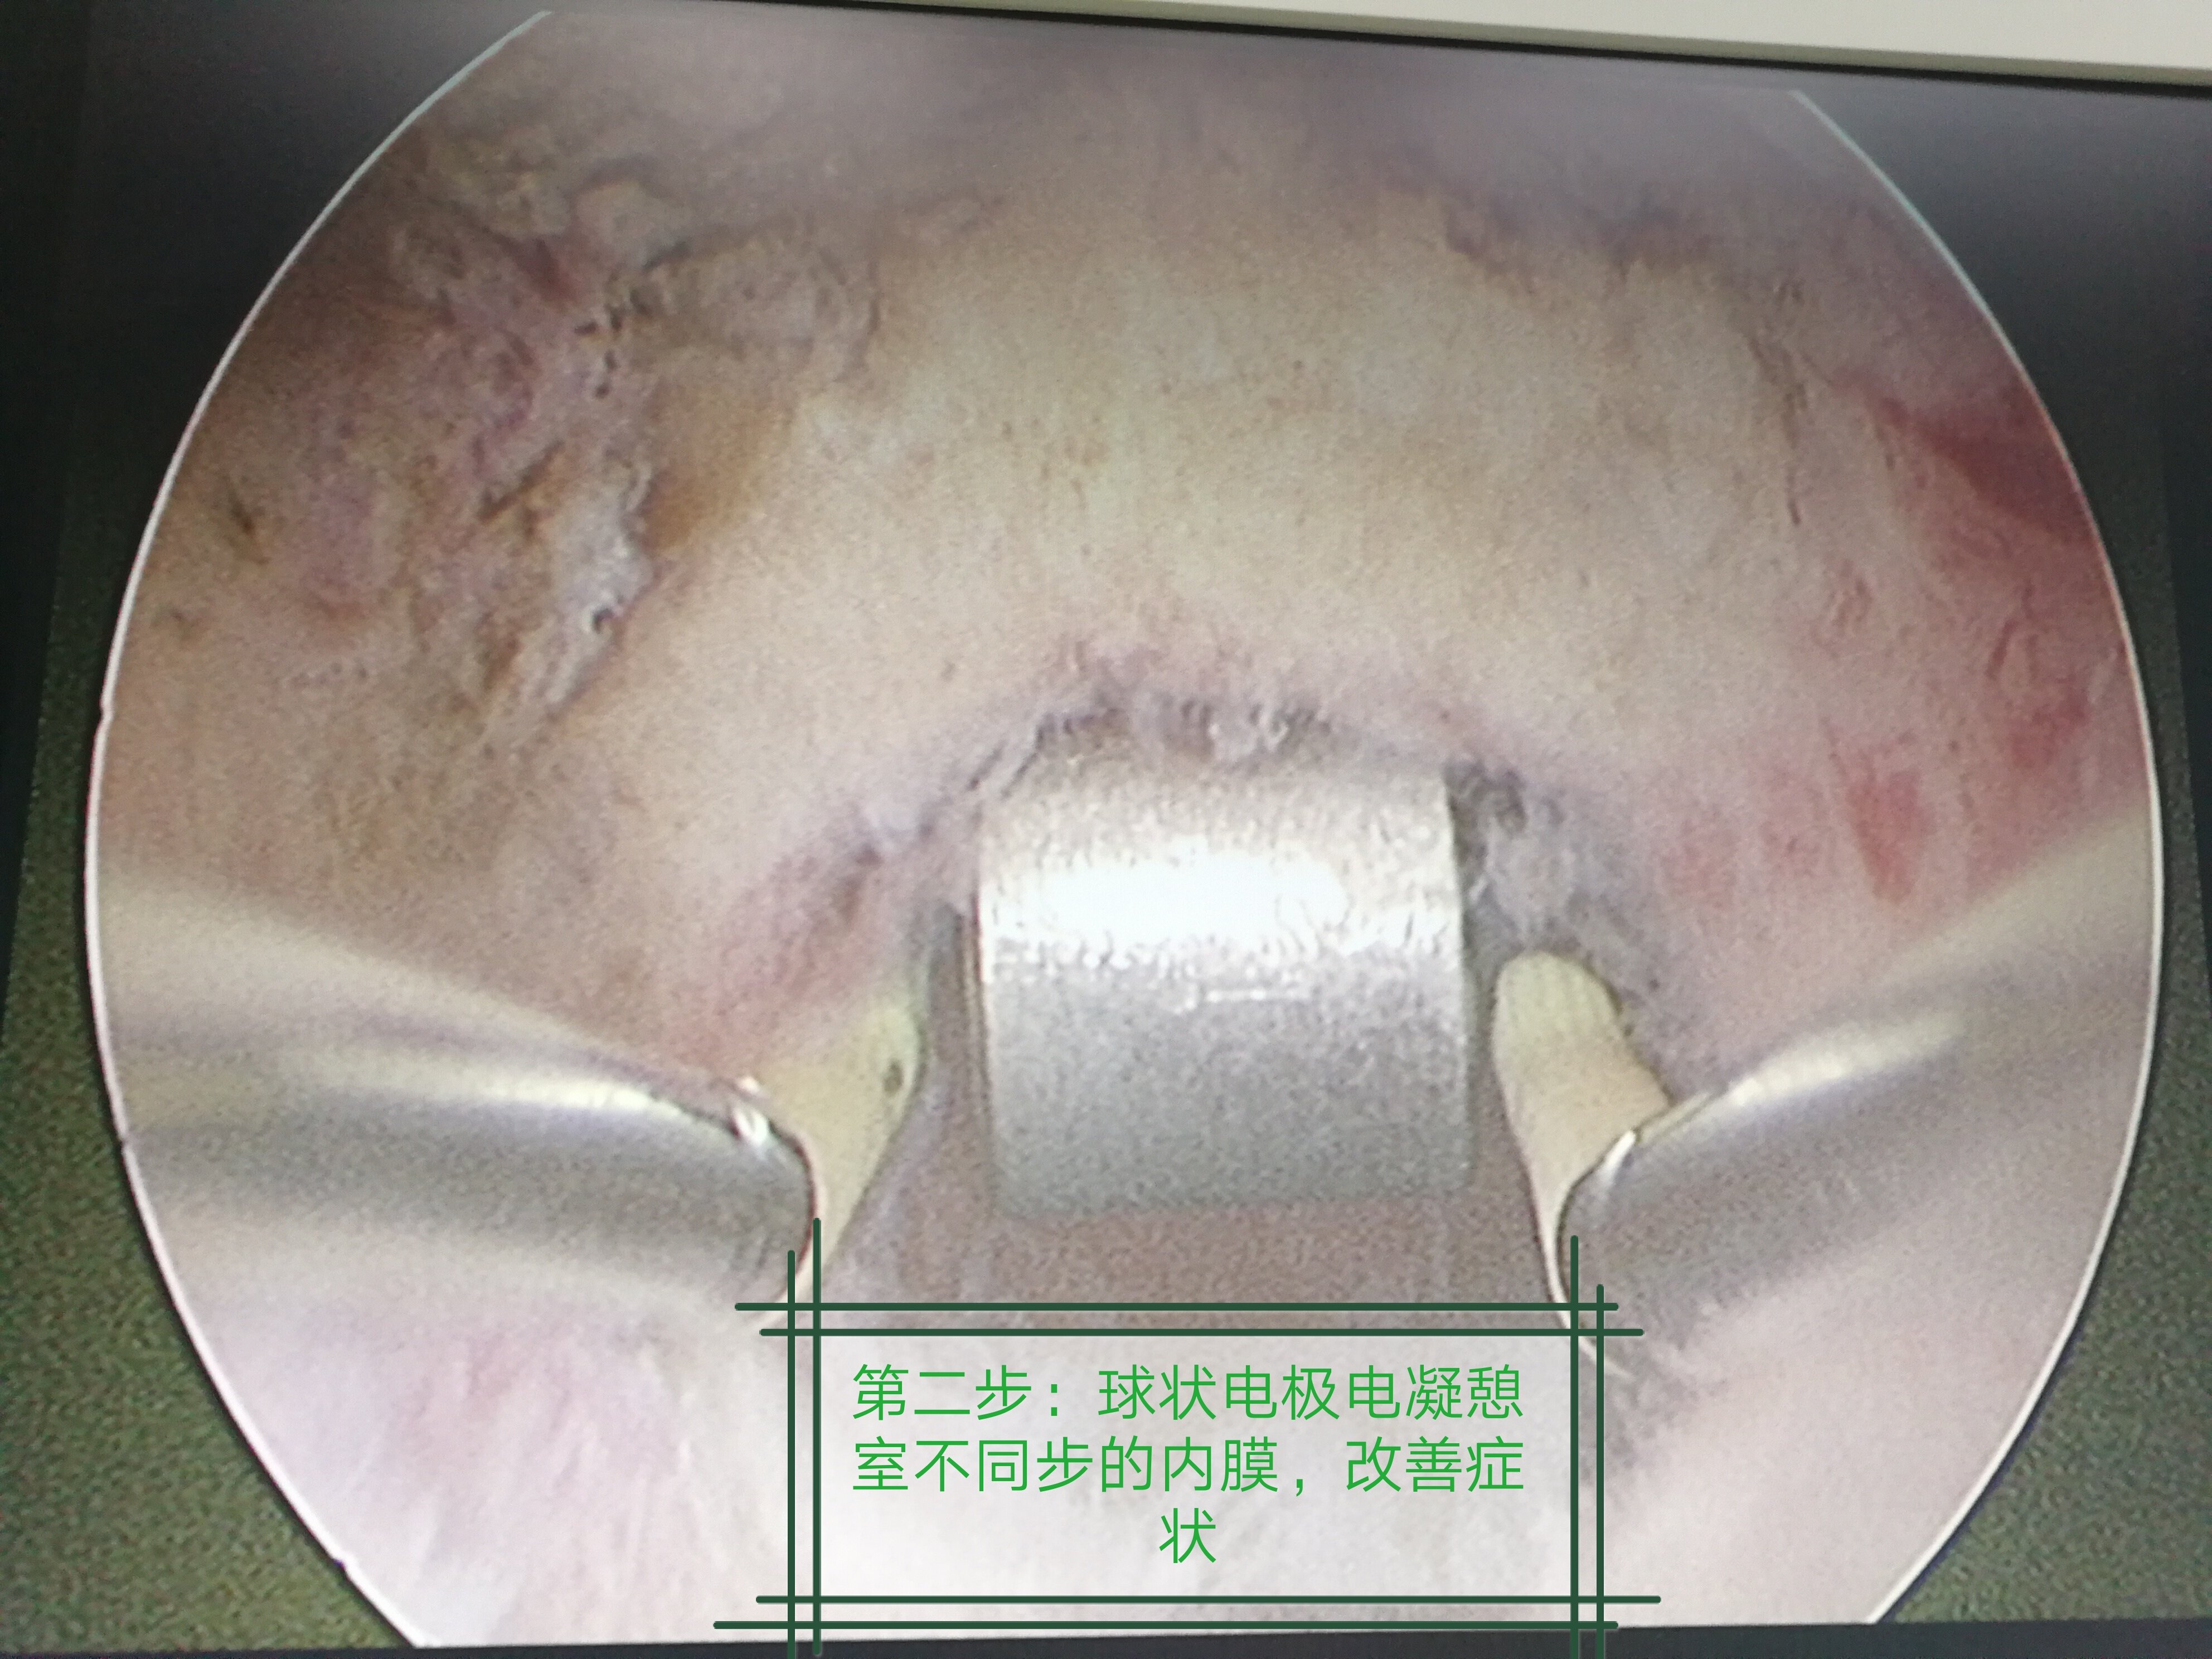 手术解析:宫腔镜下切除-剖宫产术后子宫切口憩